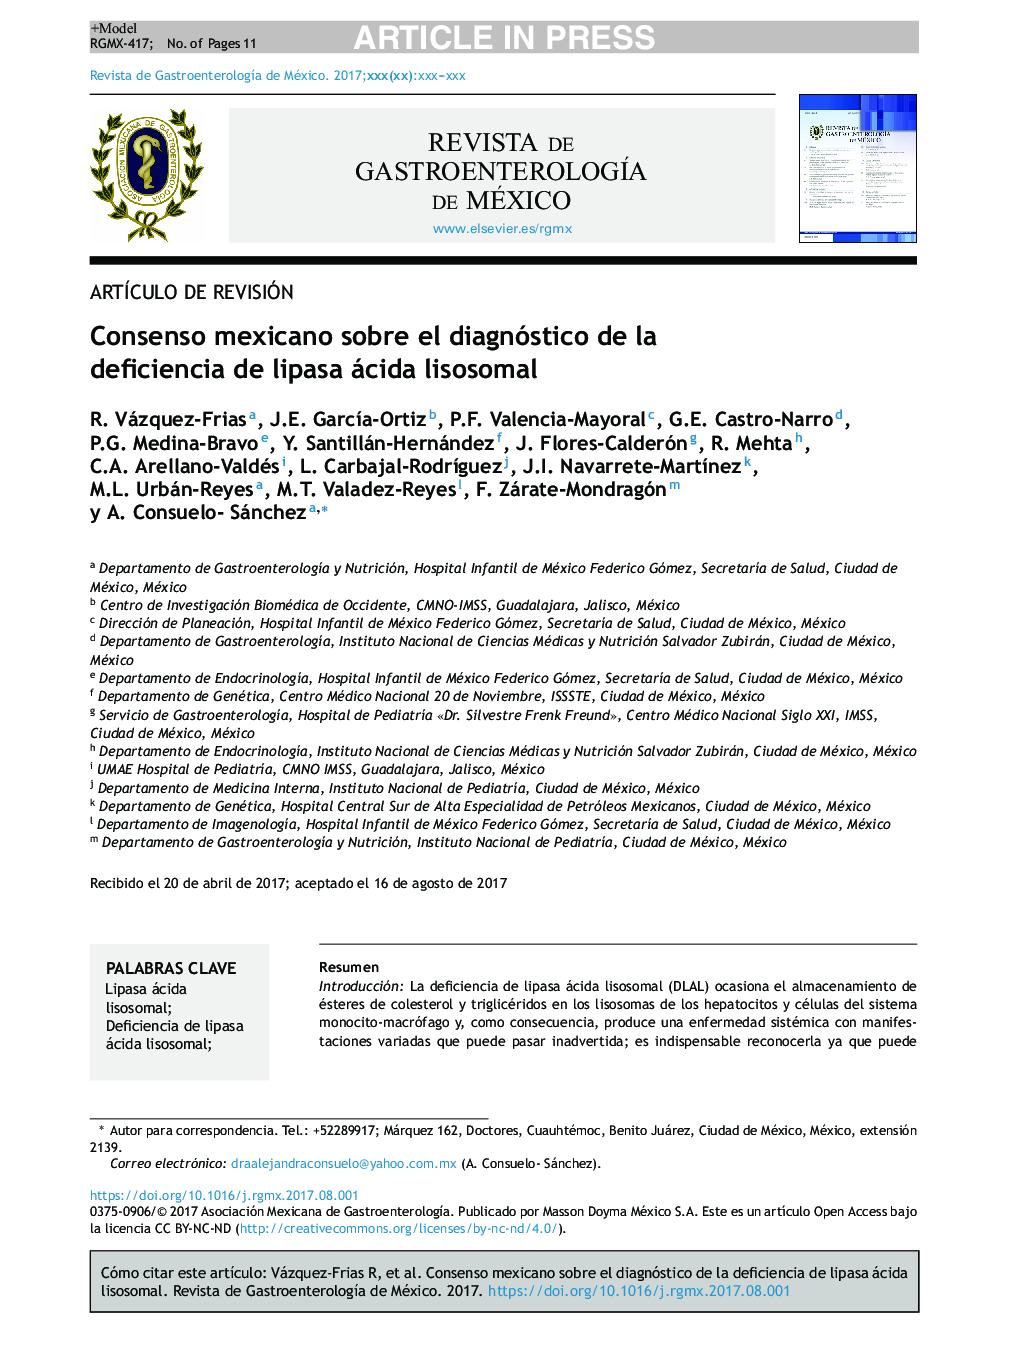 توافق مکزیک در تشخیص کمبود لیپاز با لیزوزوم اسید 